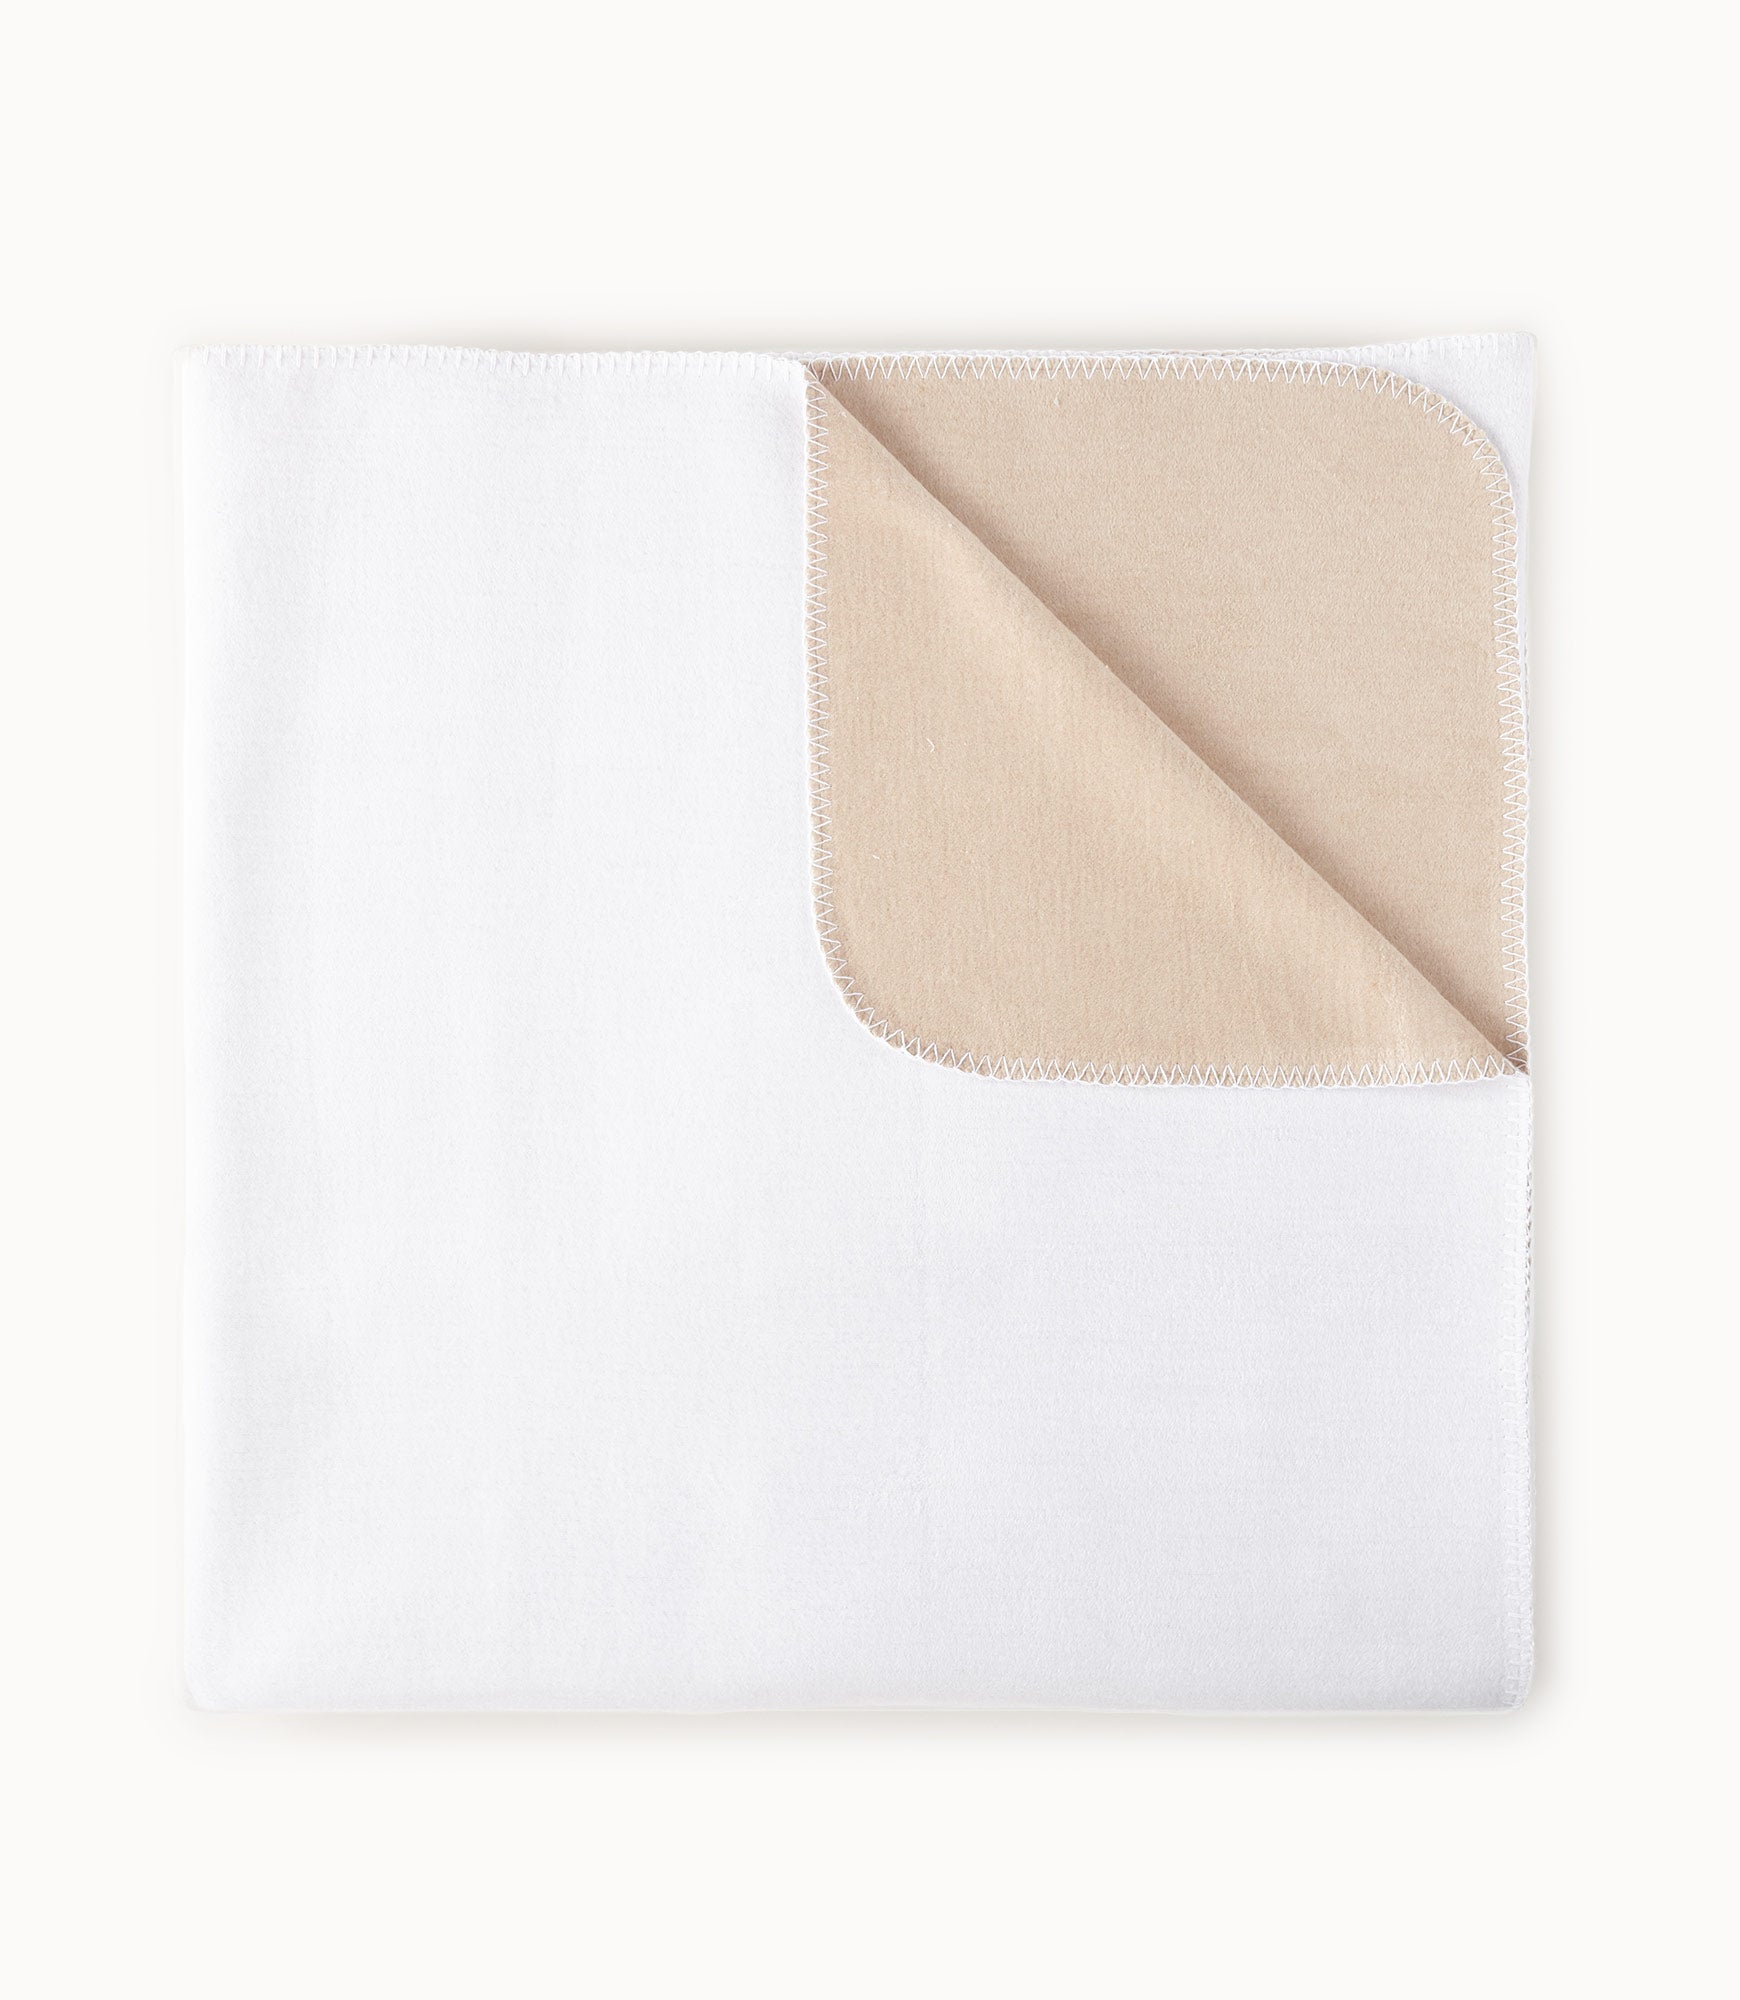 Darmen Oorlogszuchtig Proberen Reversible Blanket: Alta 100% Cotton Throw Blanket | Peacock Alley